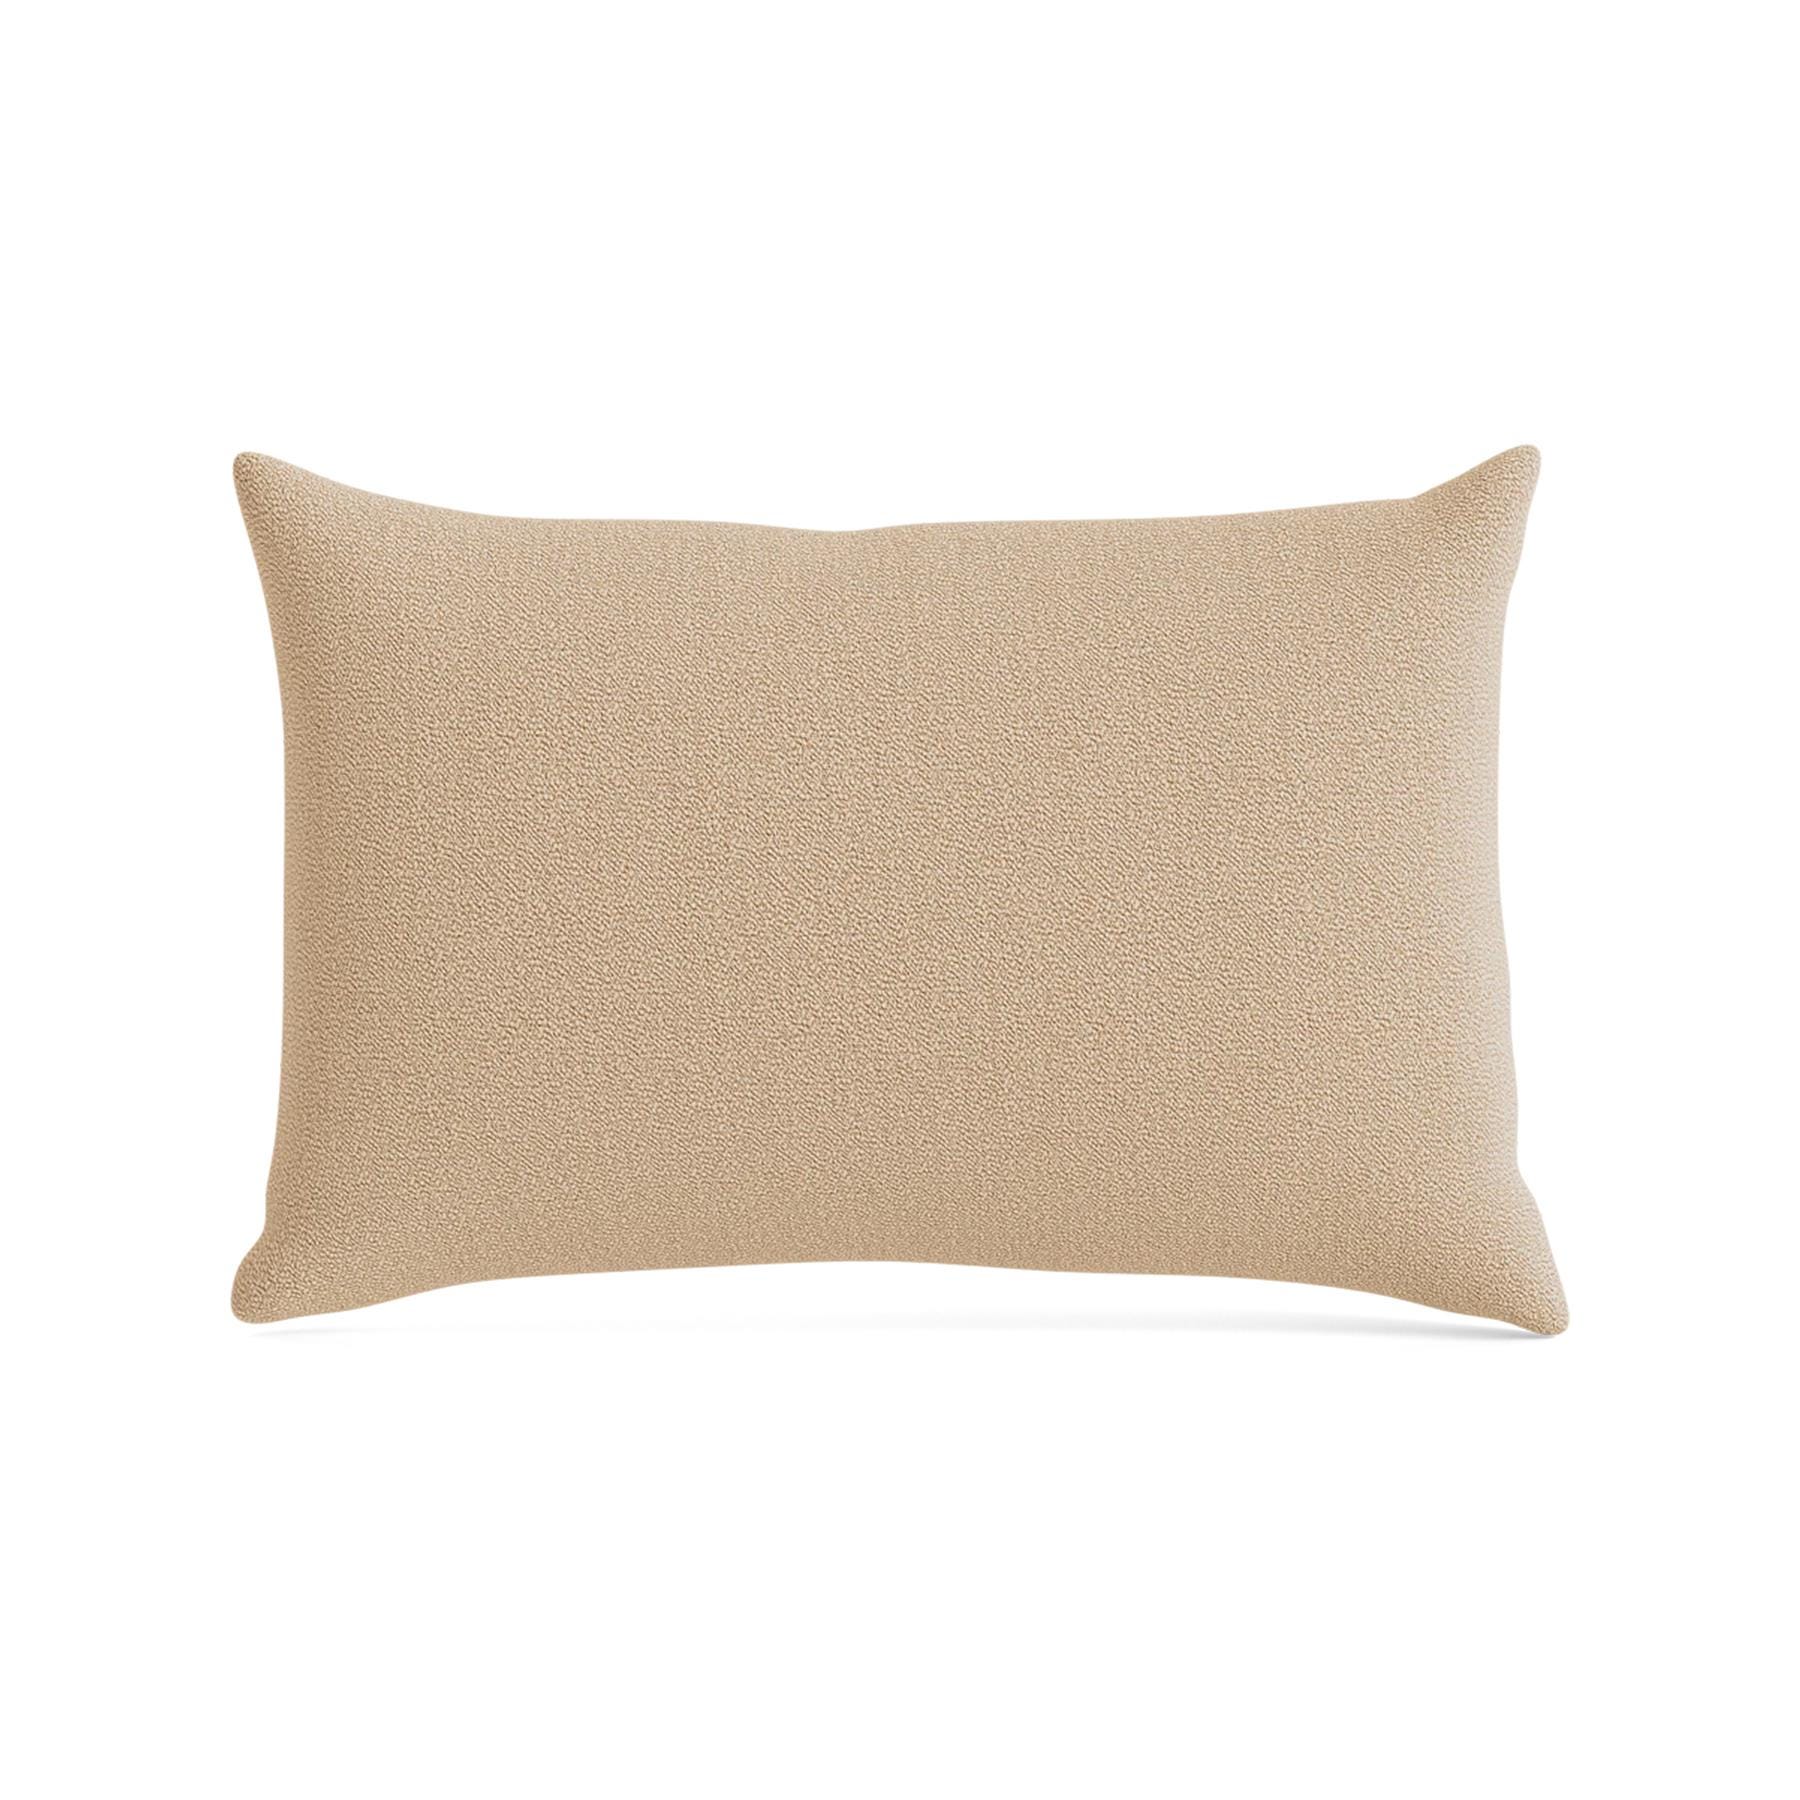 Make Nordic Pillow 40cmx60cm Vidar 323 Down And Fibers Brown